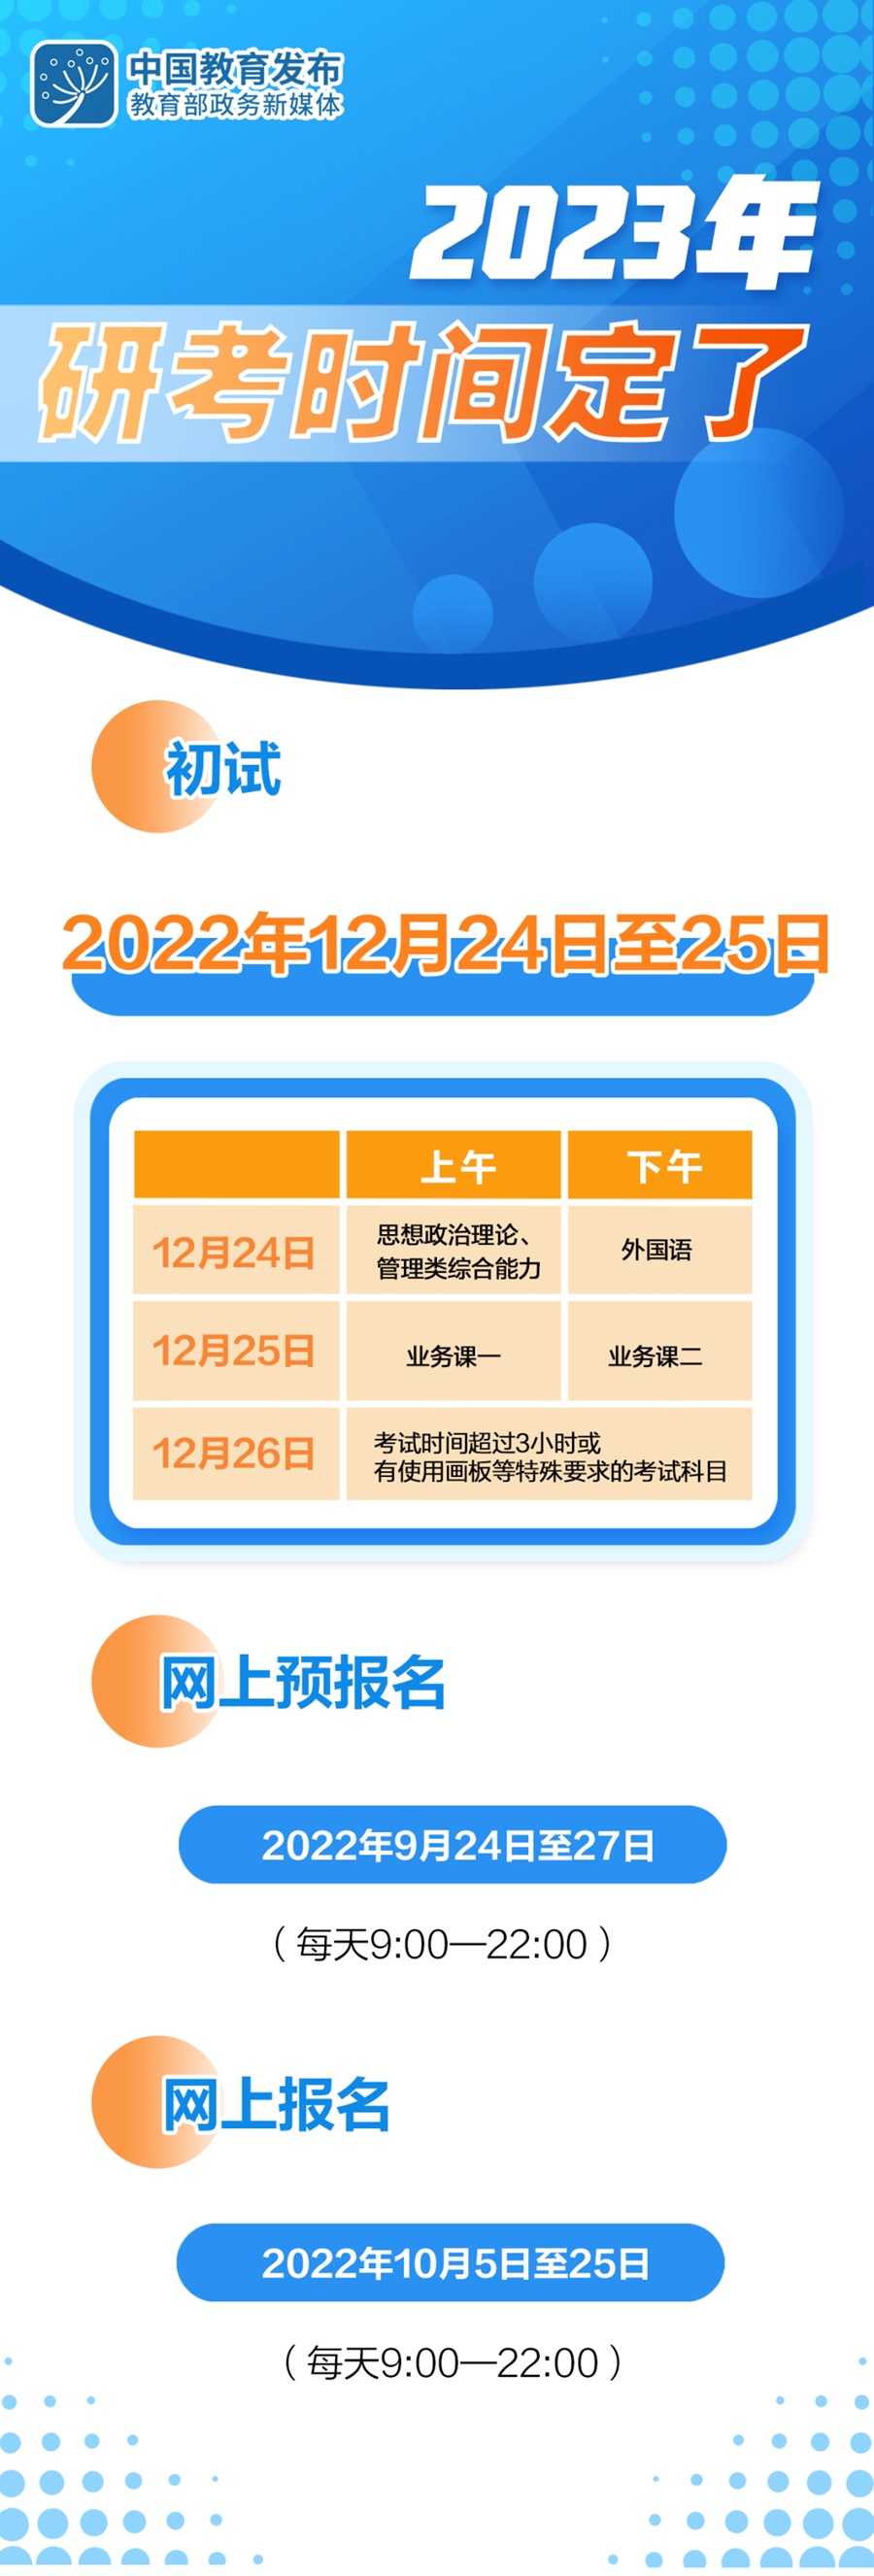 2023年研考初试将于2022年12月24日至25日进行